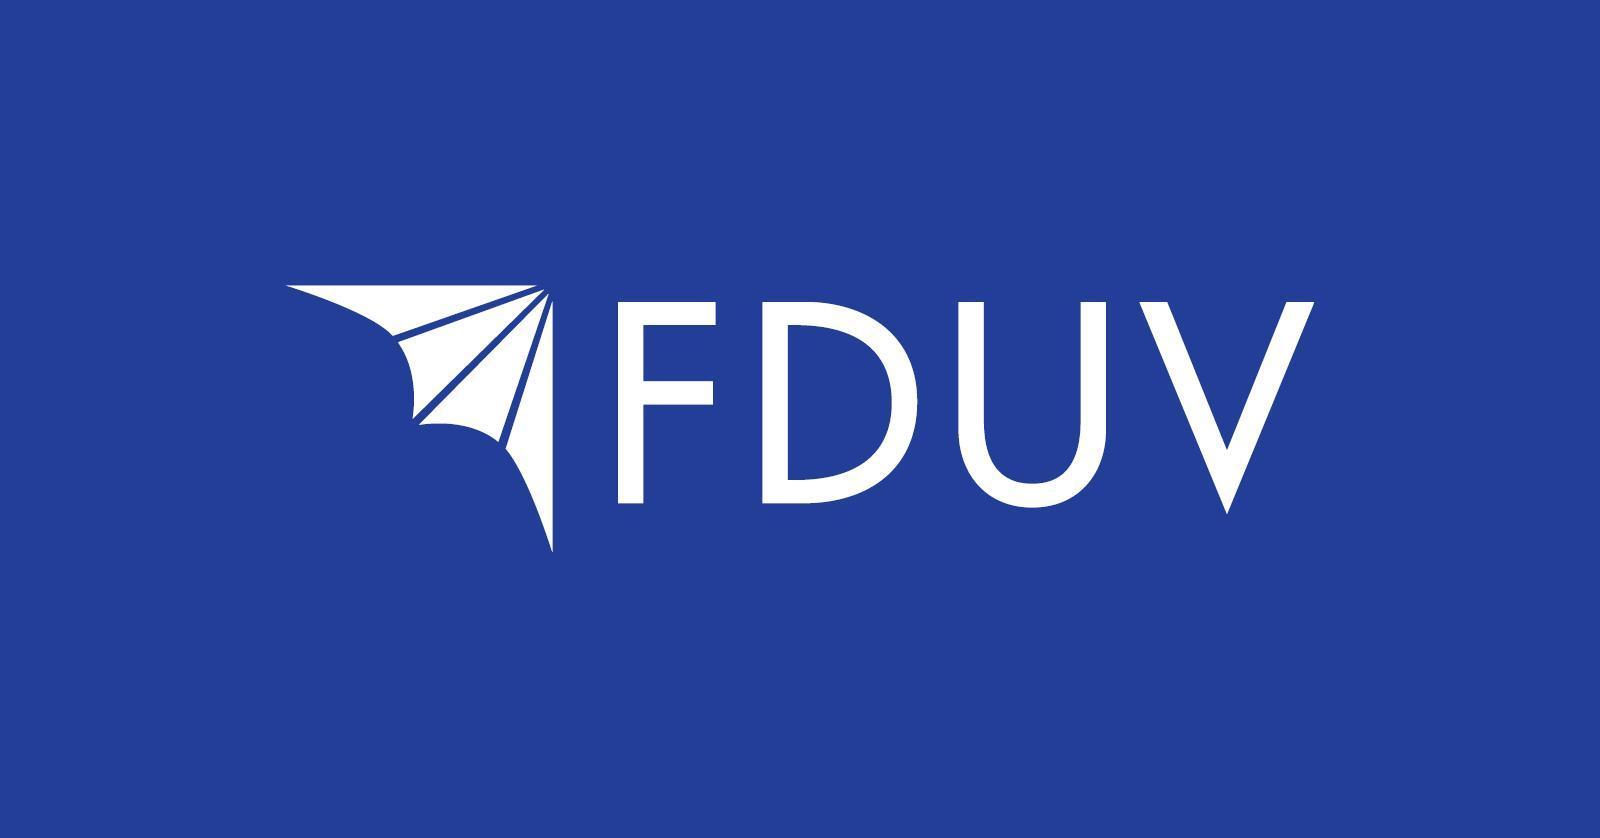 FDUV:s logo.